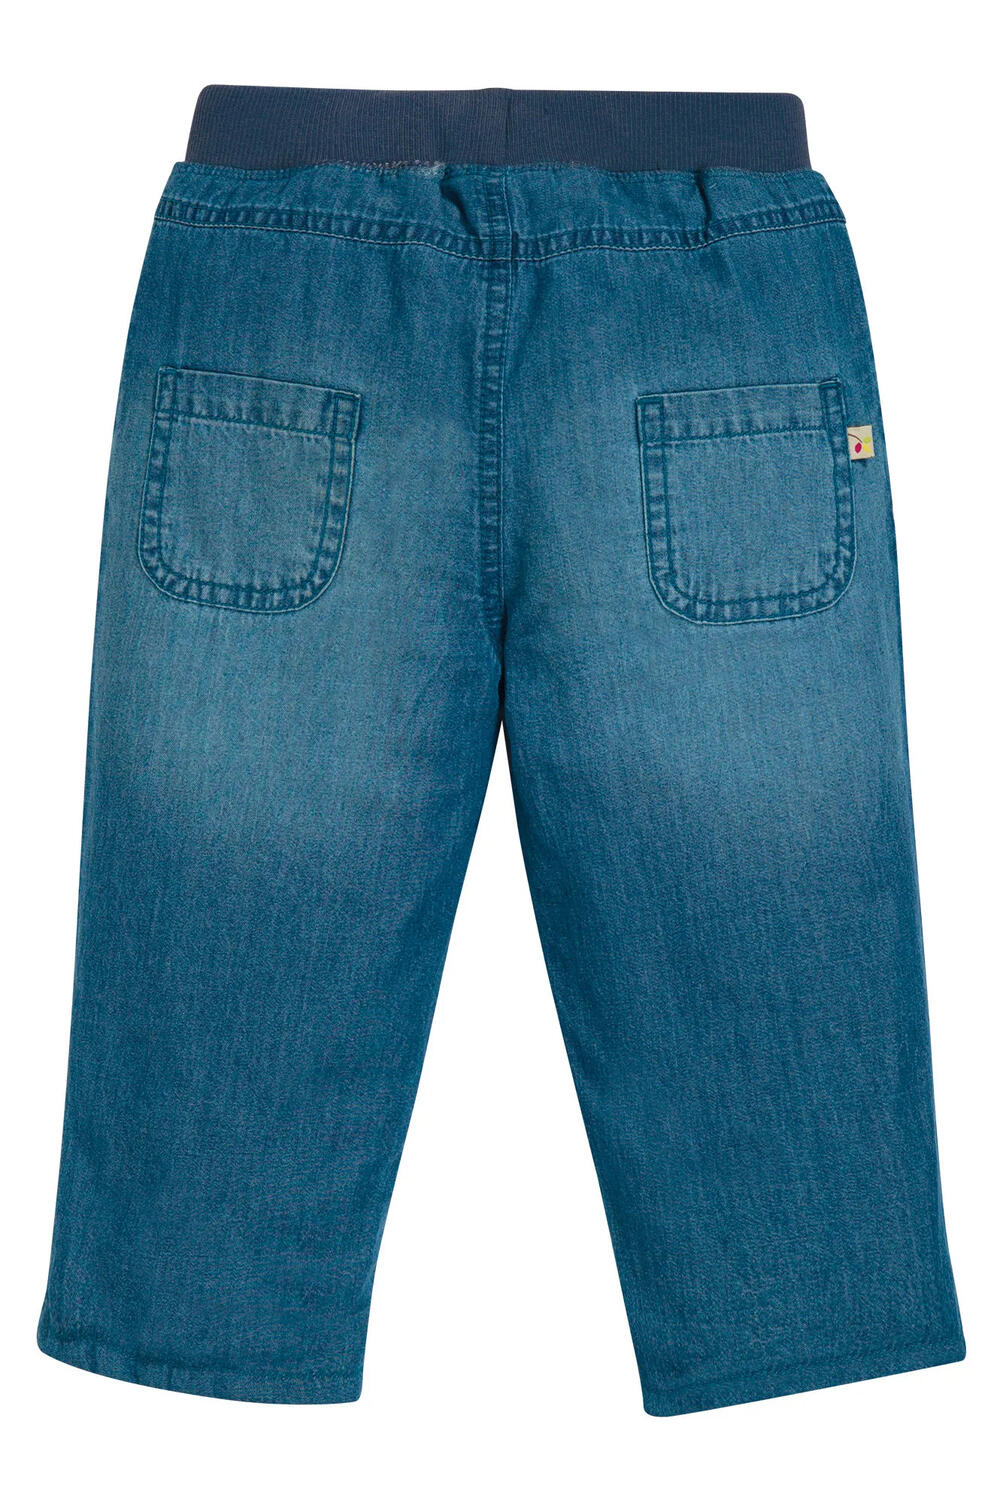 Frugi Comfy Lined Jeans